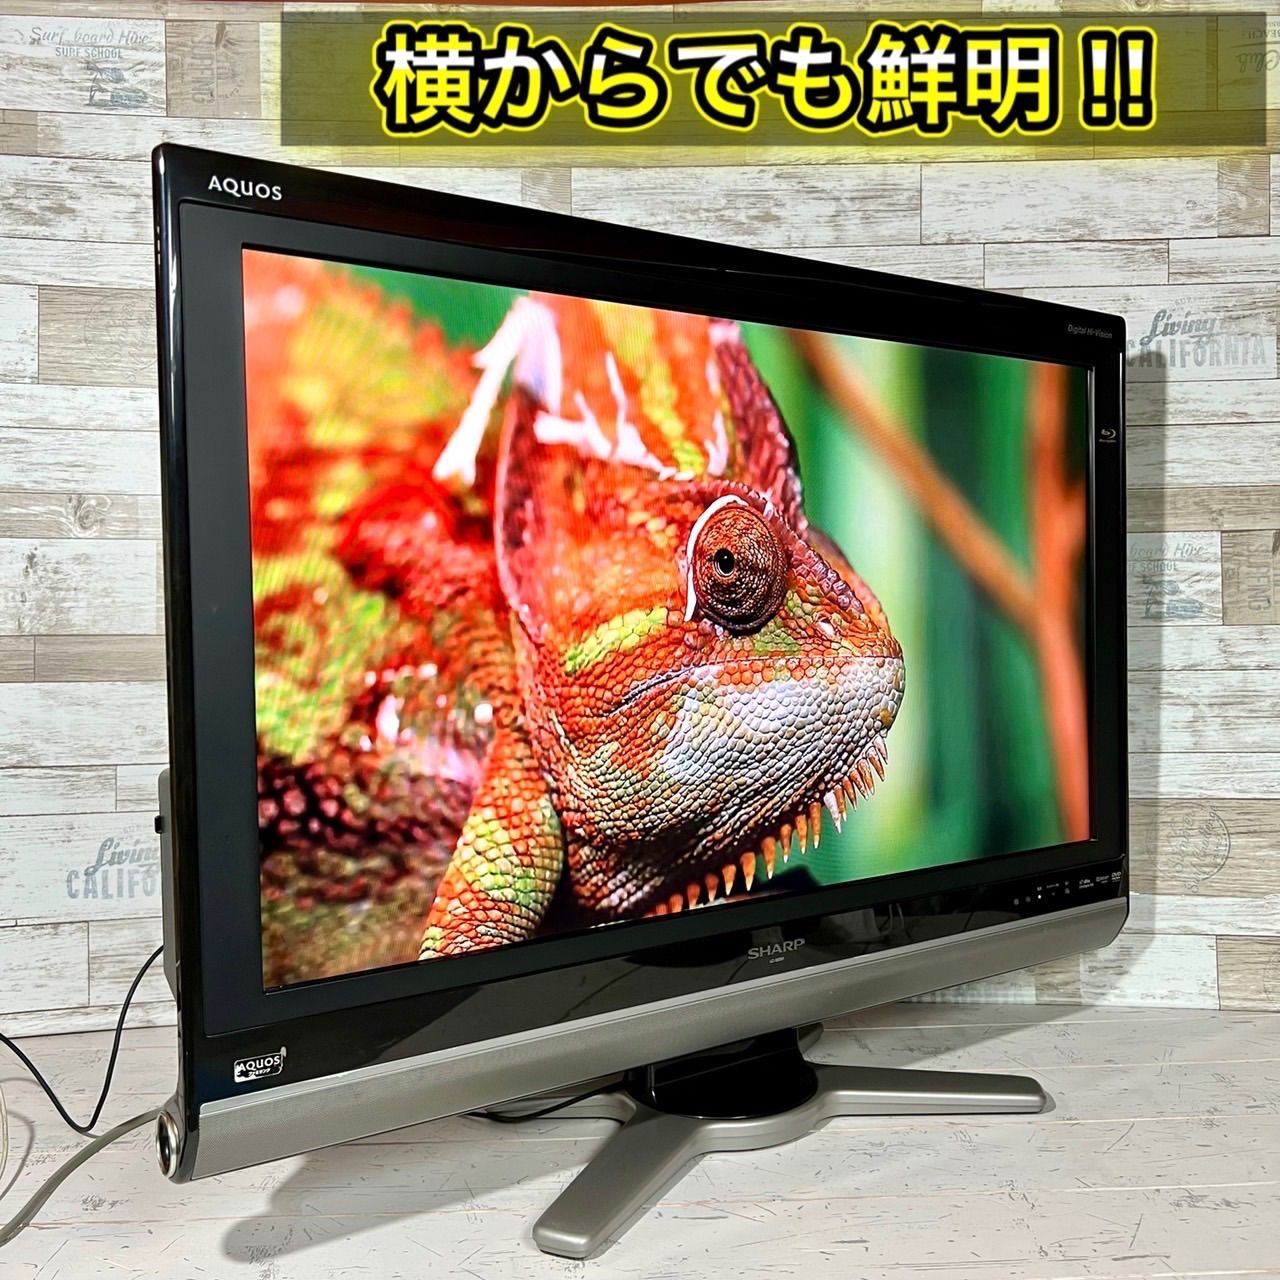 37インチ 液晶テレビ DVD横入れタイプ SHARP AQUOS - テレビ